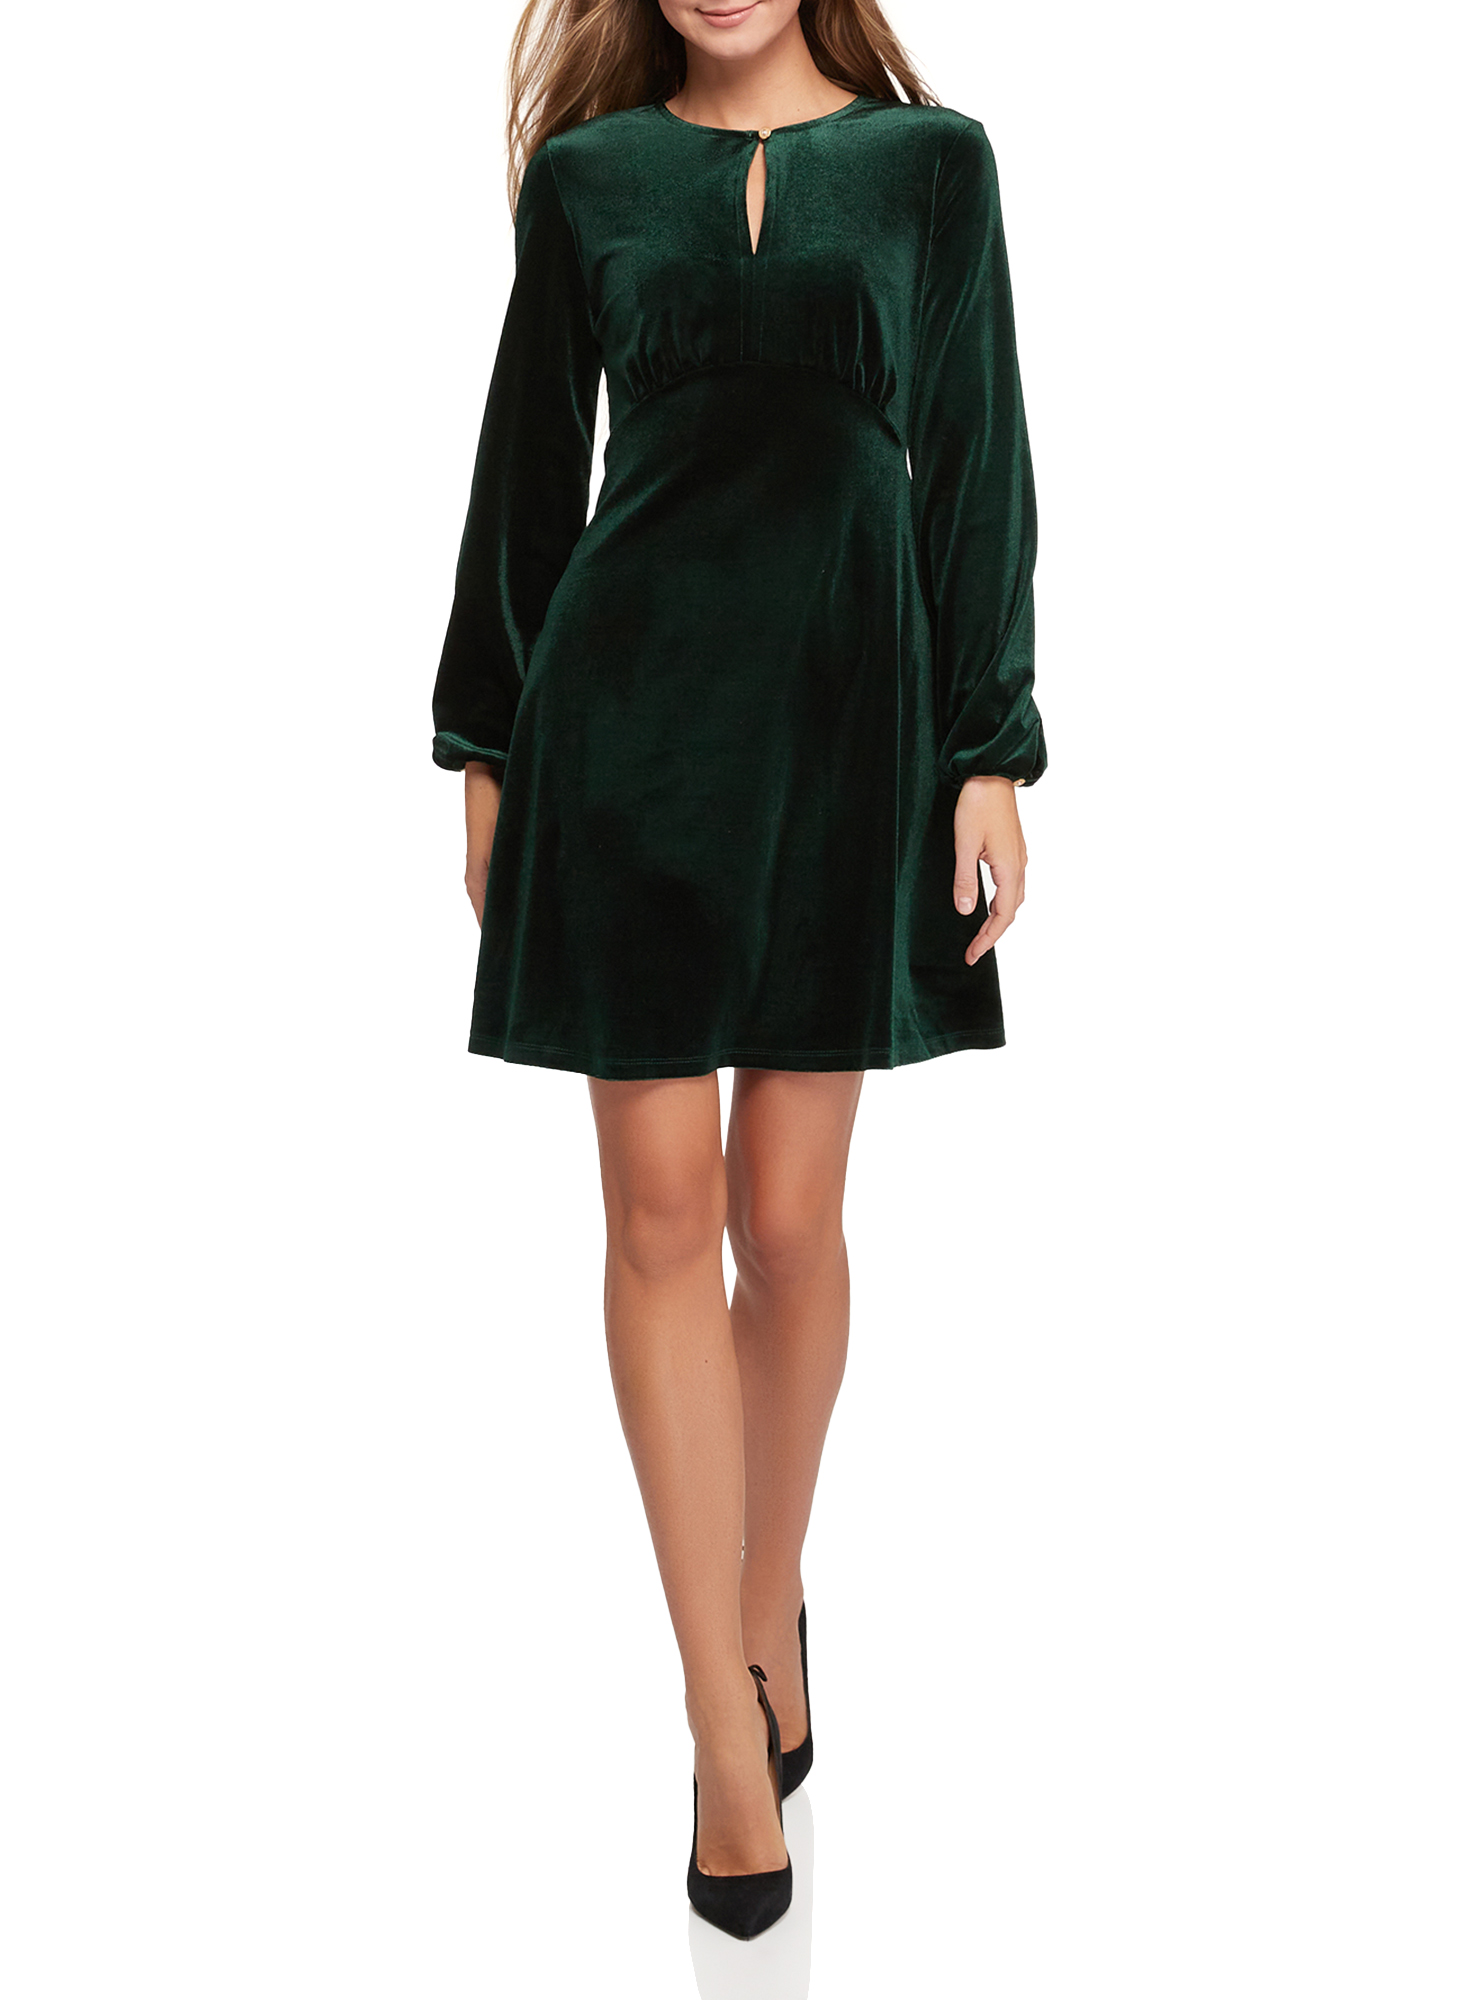 Платье женское oodji 14001249-1 зеленое XS